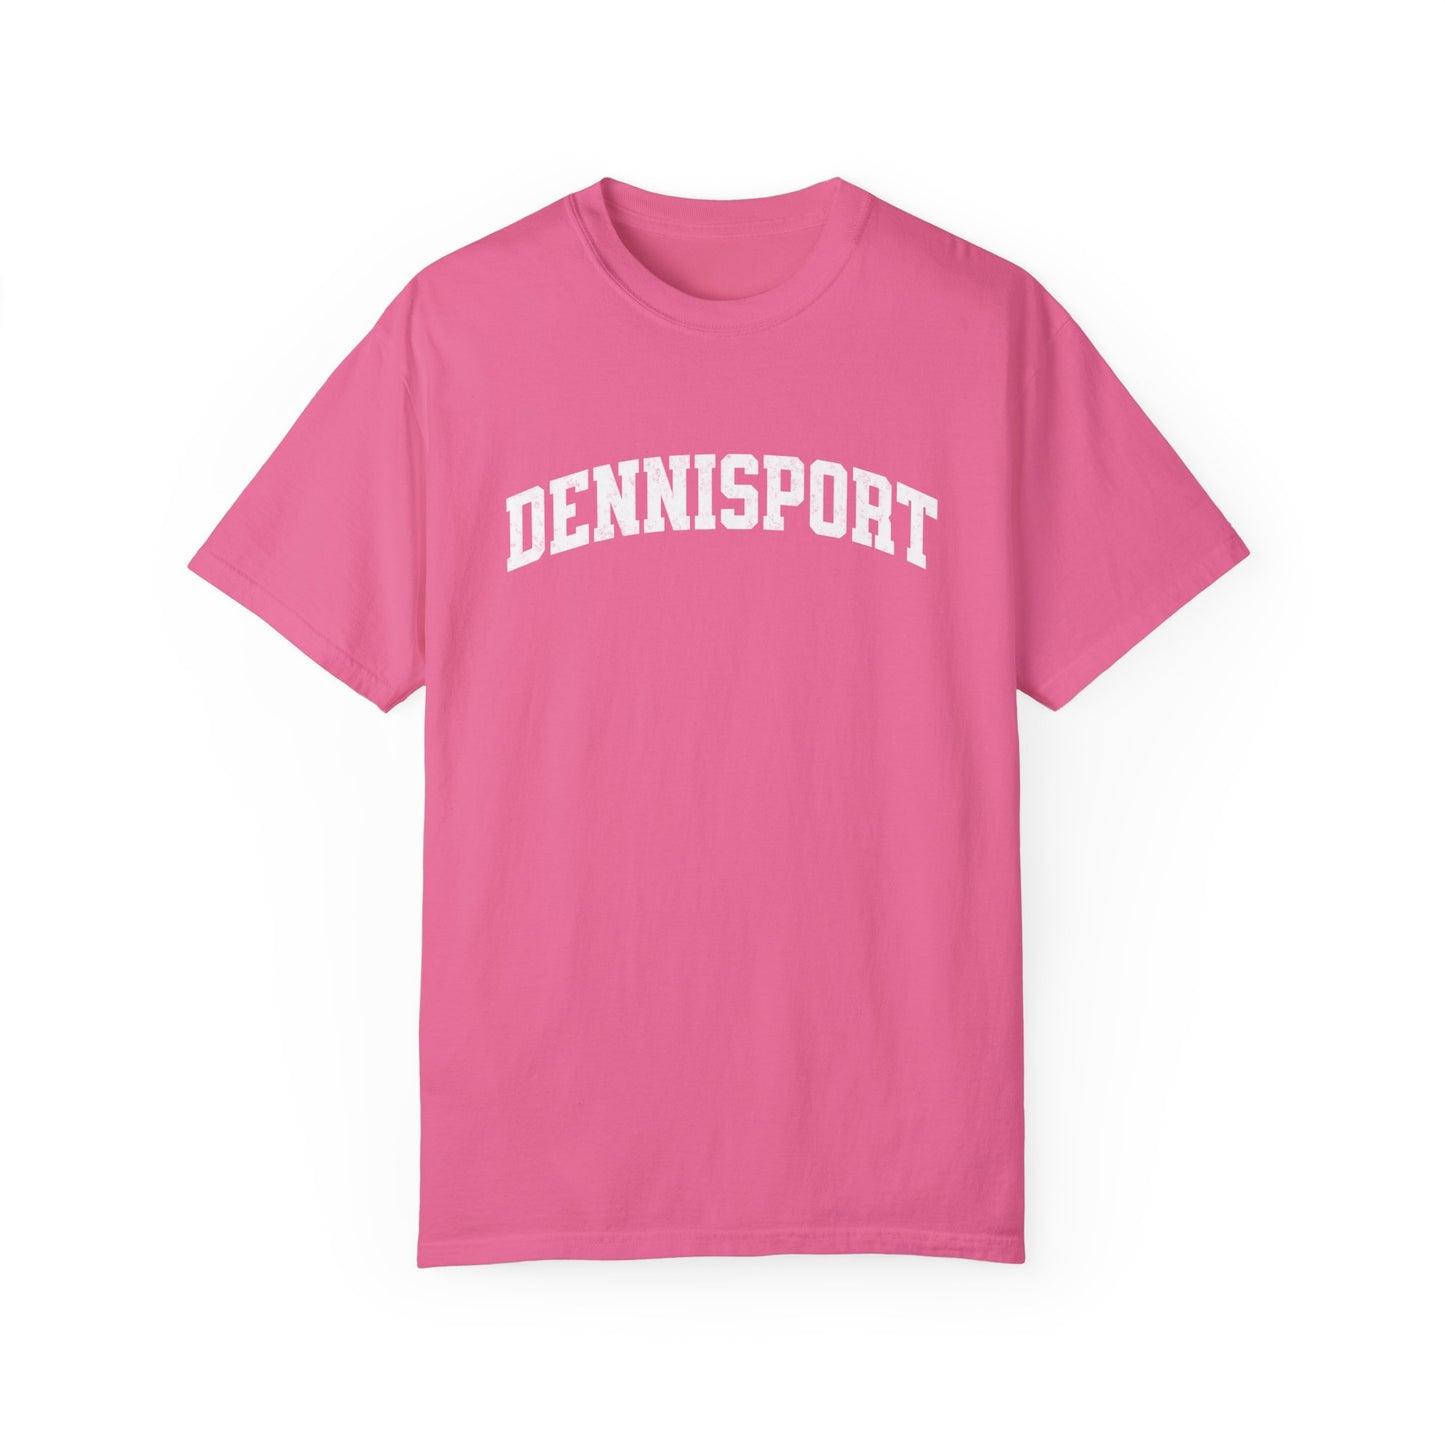 Dennisport Garment-Dyed T-shirt